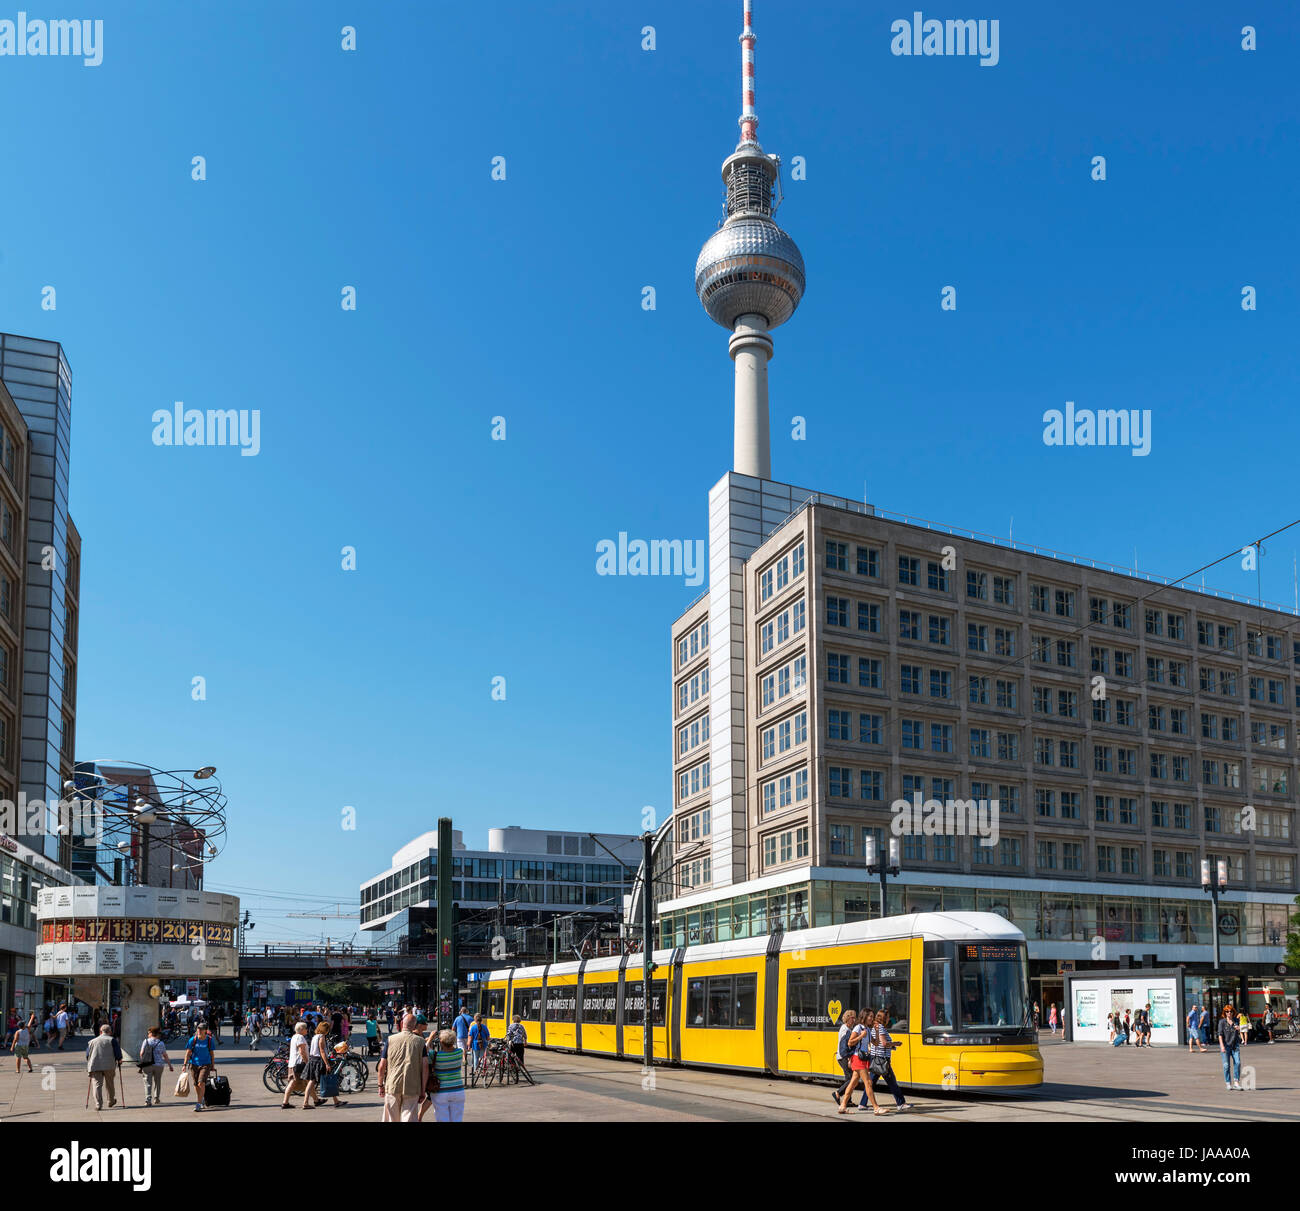 Alexanderplatz, Berlin. The Fernsehturm (TV Tower) from Alexanderplatz, Berlin, Germany Stock Photo